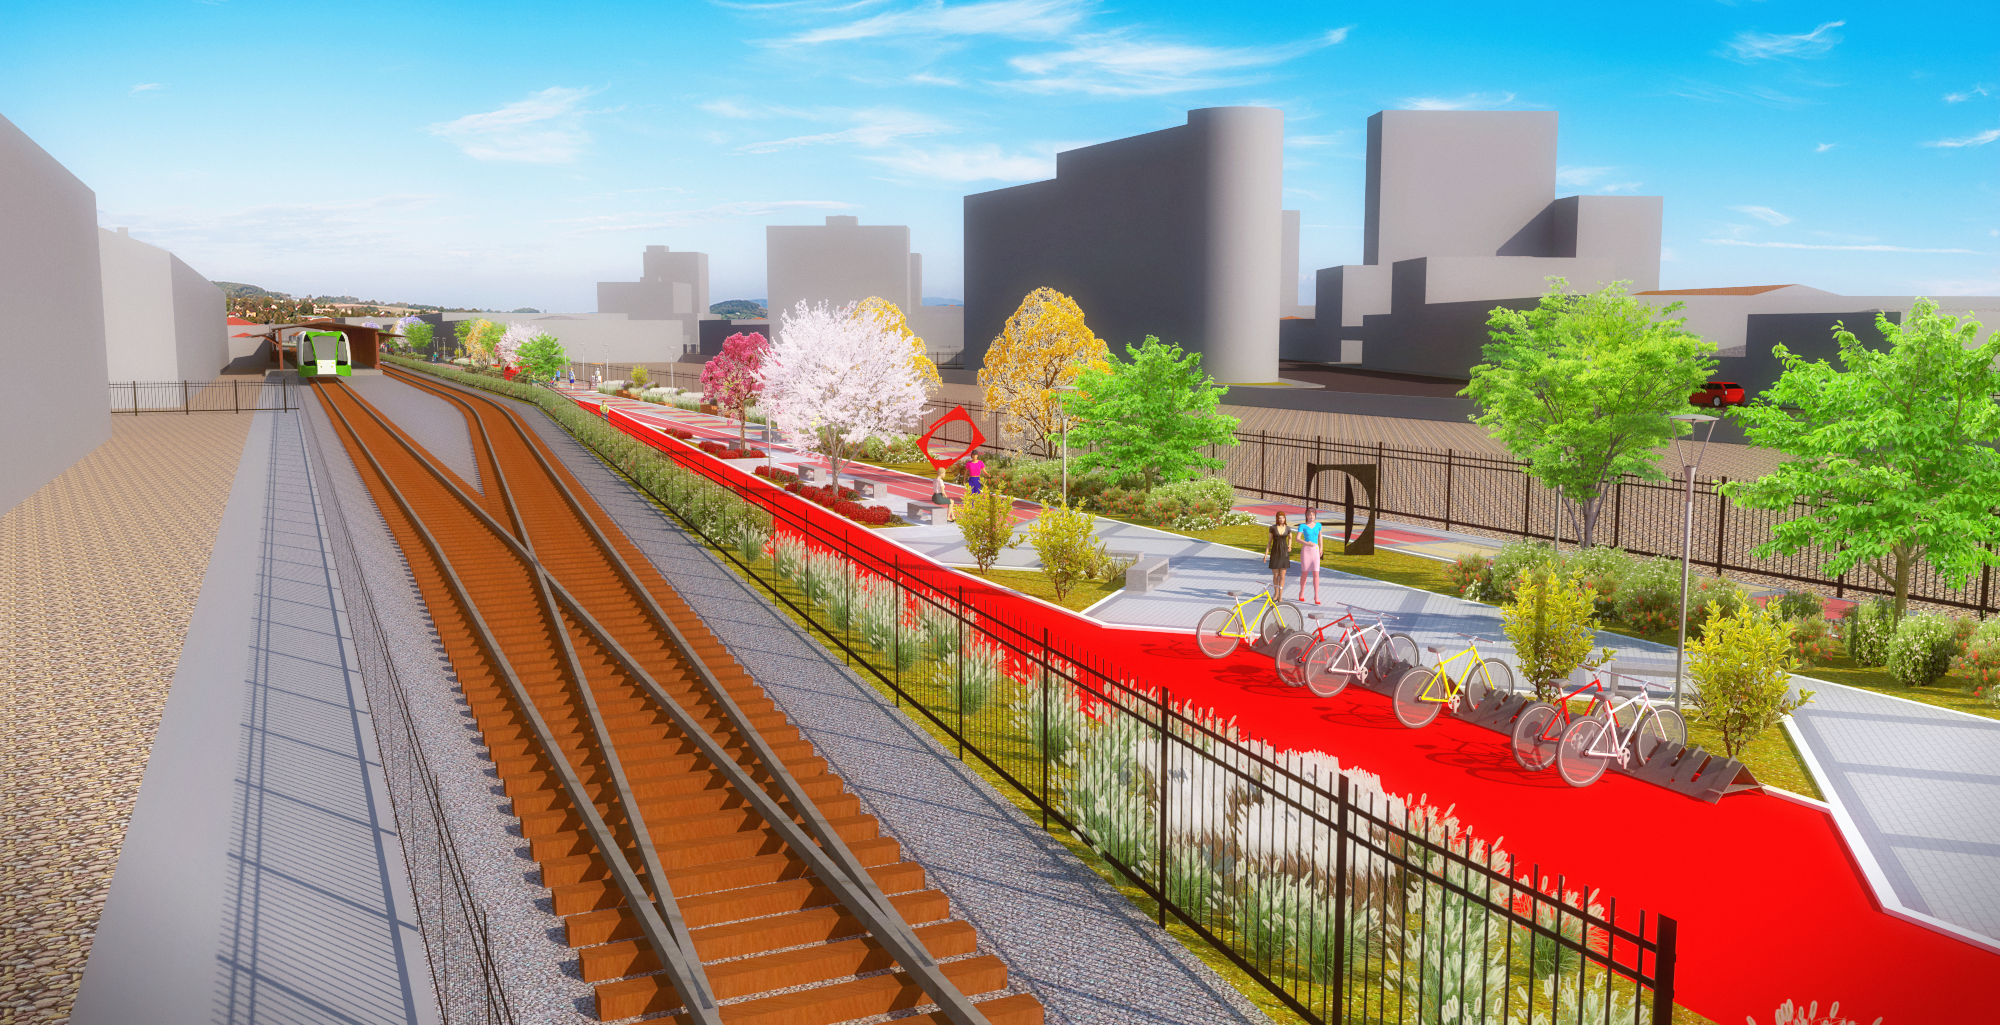 Construção de ciclovia paralela aos trilhos da linha férrea é aprovada